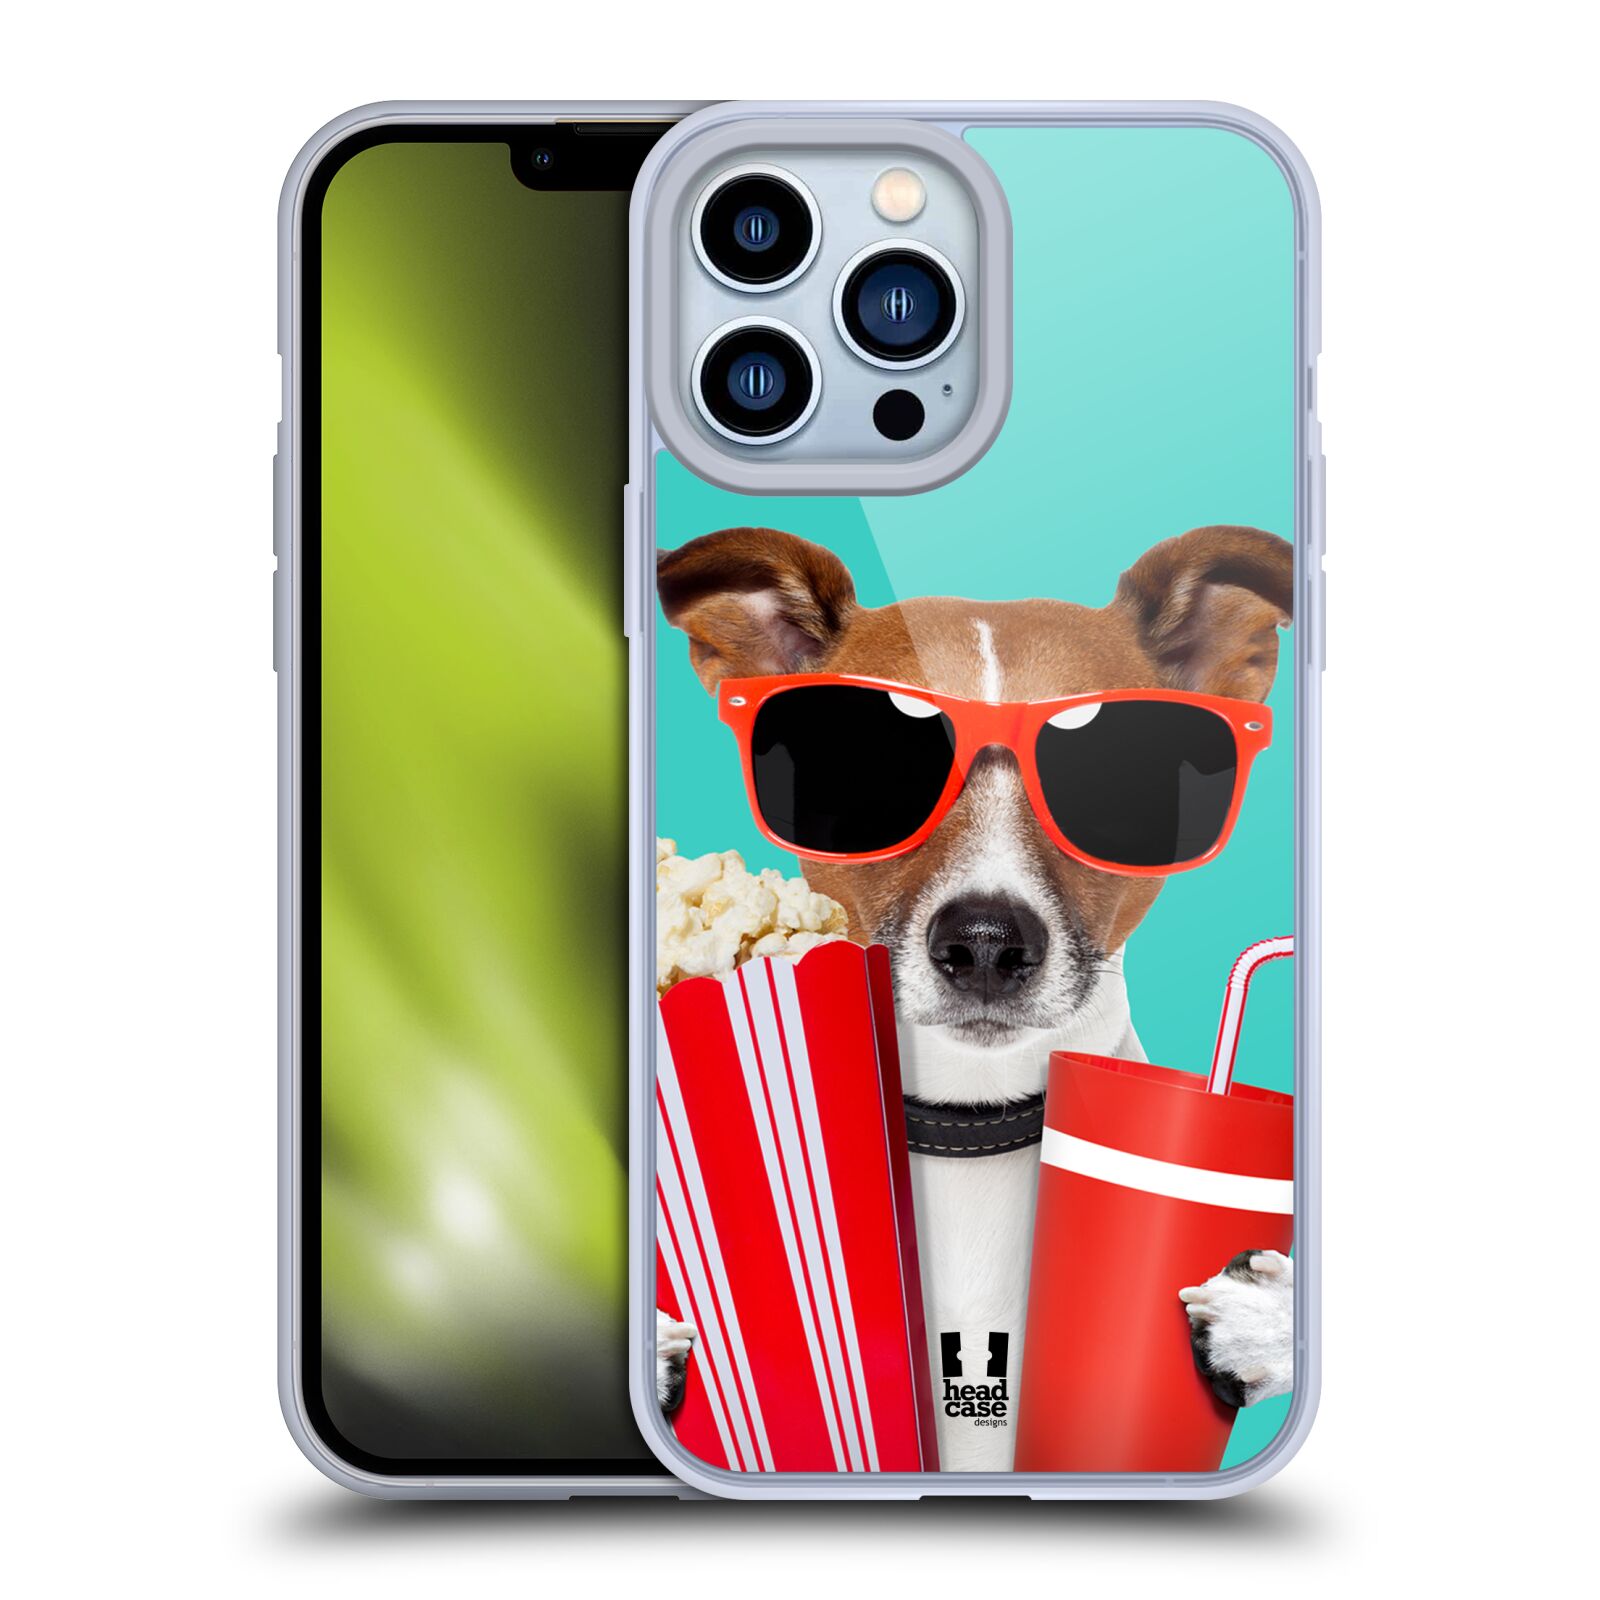 Plastový obal HEAD CASE na mobil Apple Iphone 13 PRO MAX vzor Legrační zvířátka pejsek v kině s popkornem